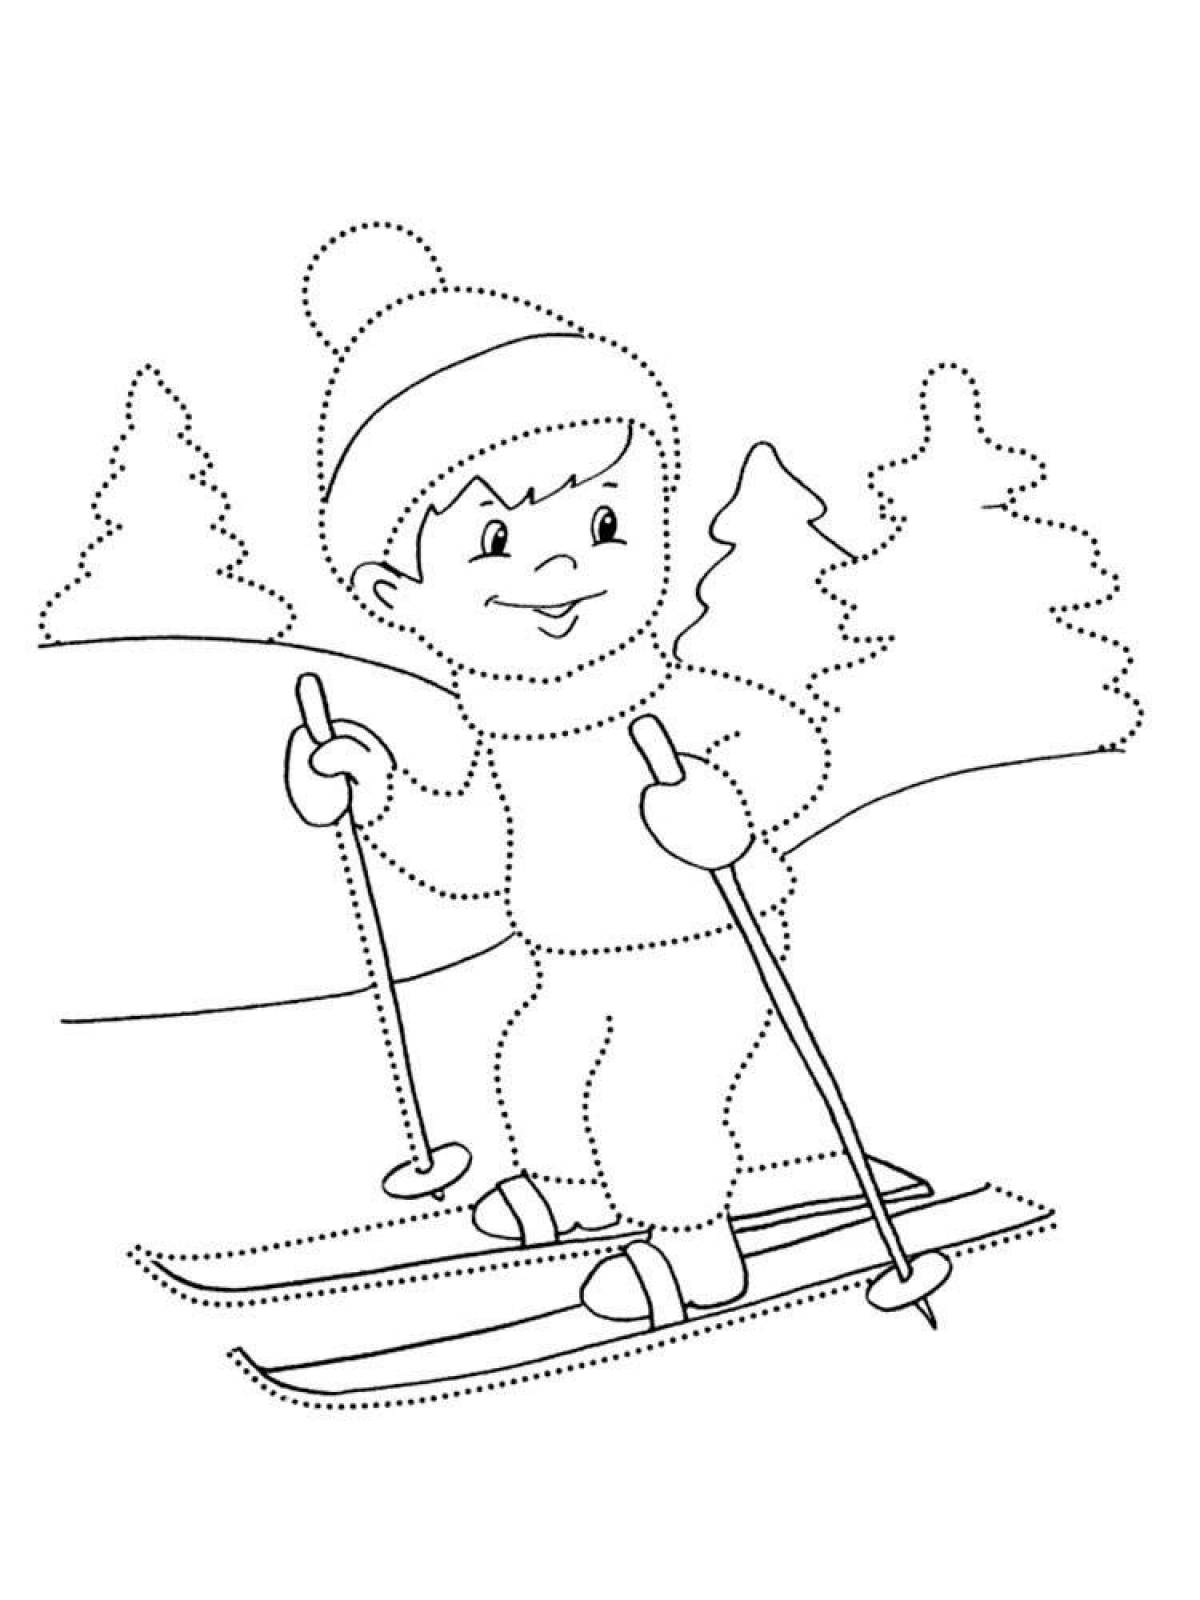 Skier for kids #7